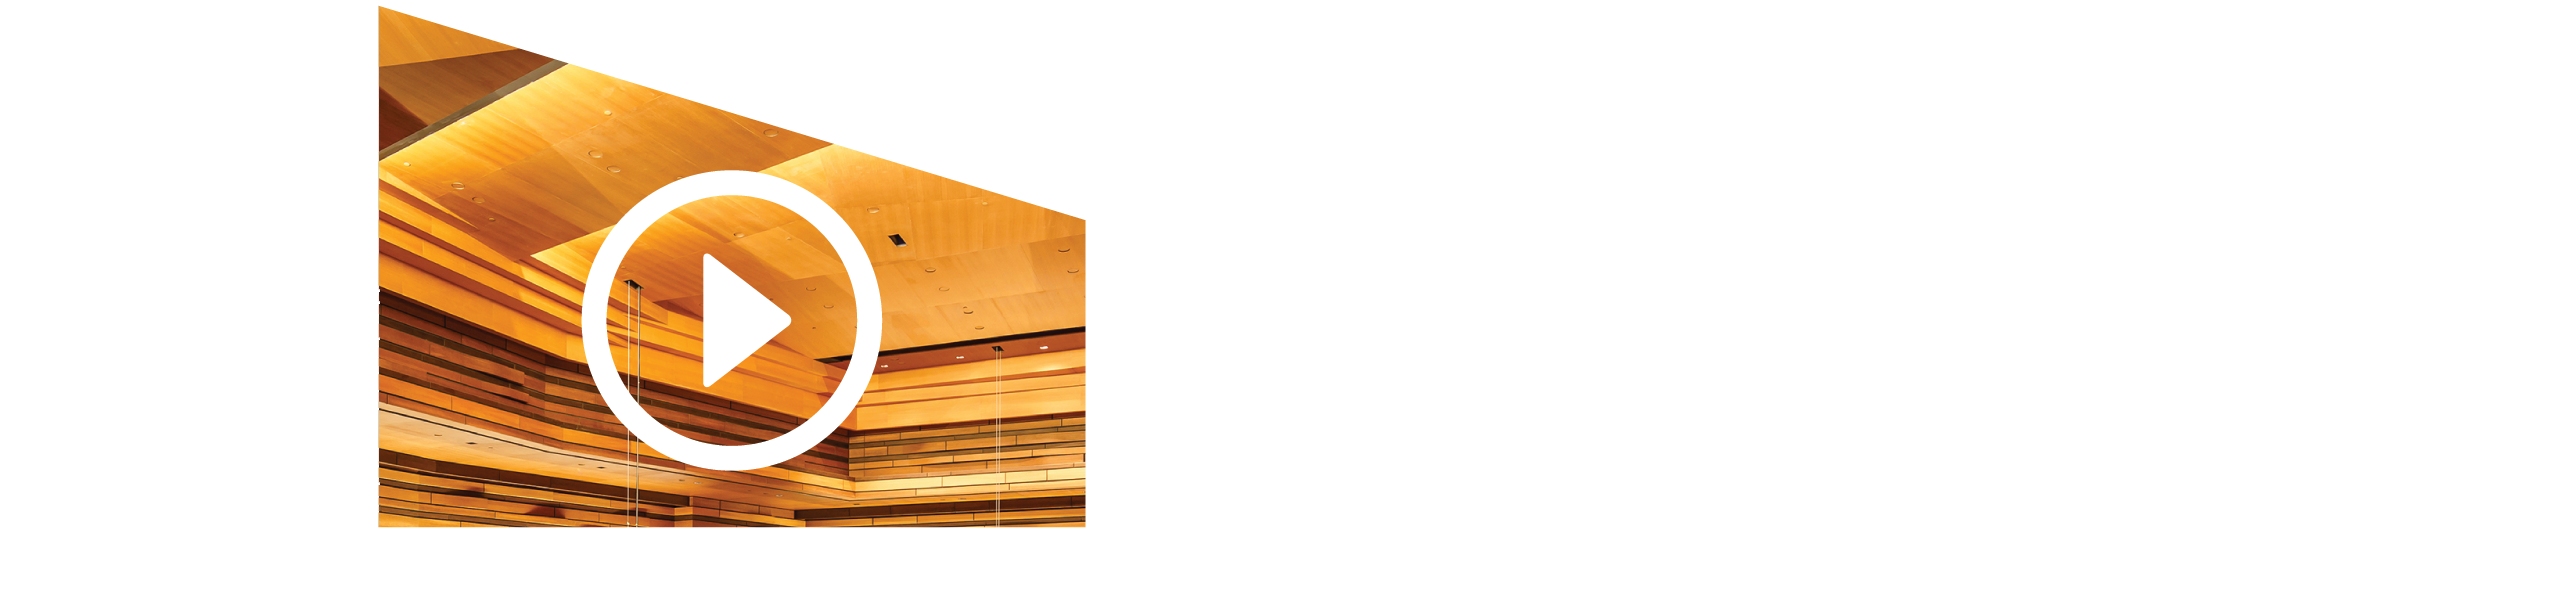 Isabel Digital Concert Hall logo